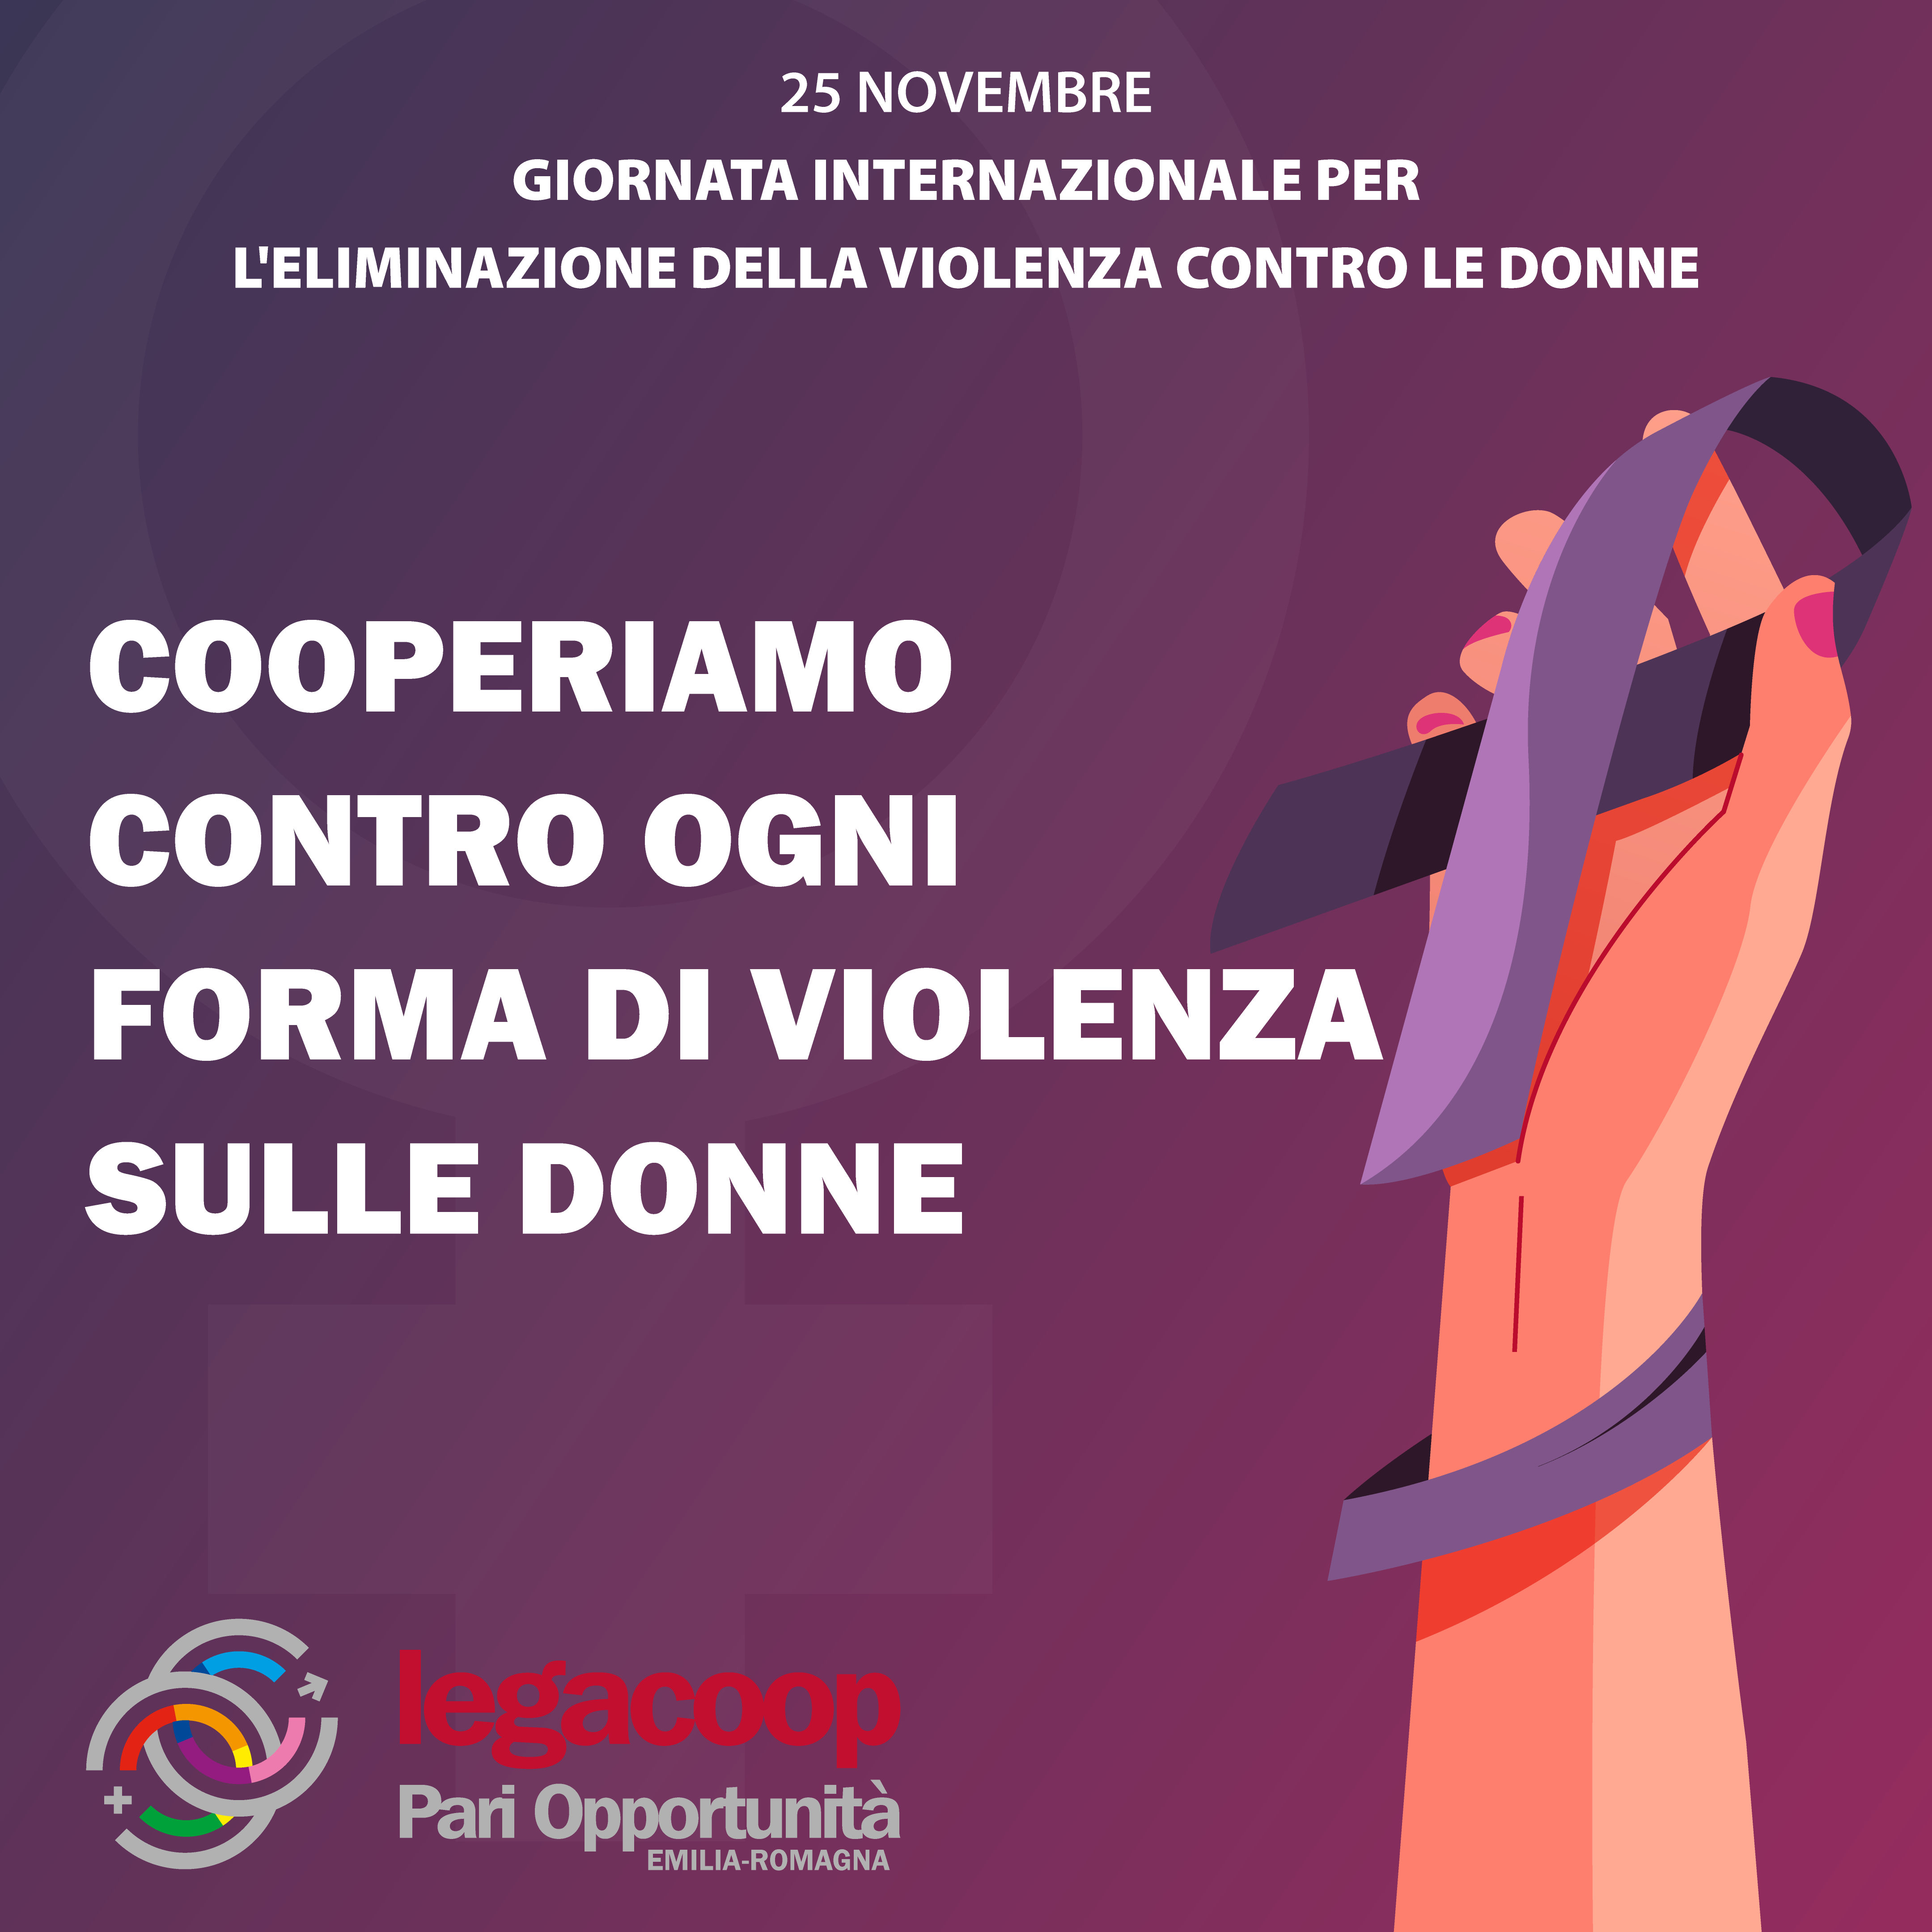 La Commissione Pari Opportunità Legacoop Emilia Romagna per la Giornata Internazionale per l’eliminazione della violenza contro le donne